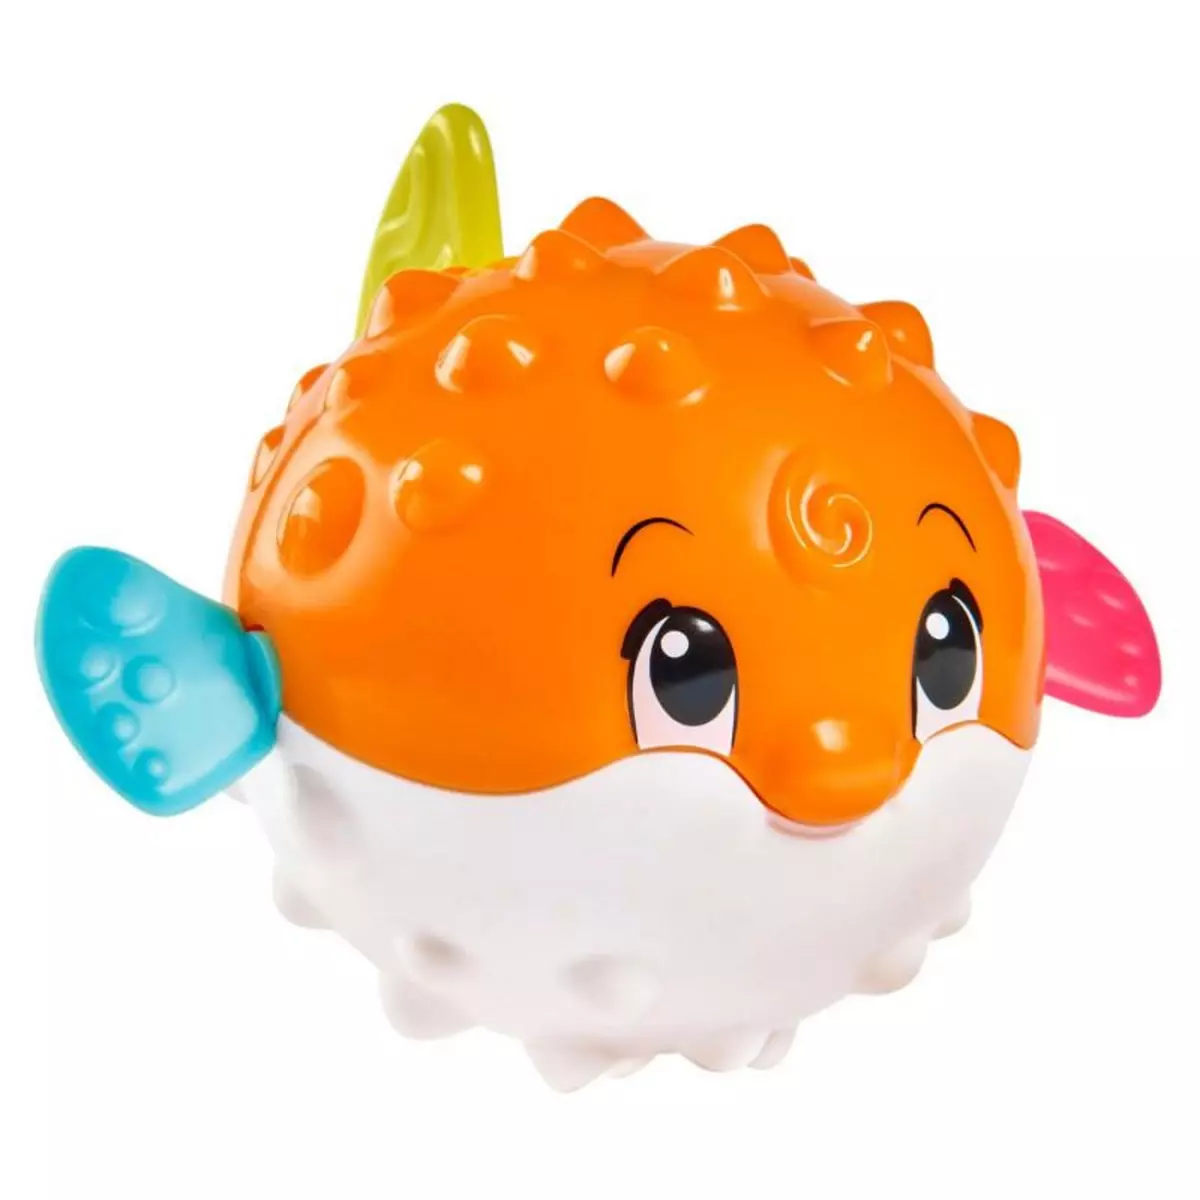 ABC ABC bath toy fish